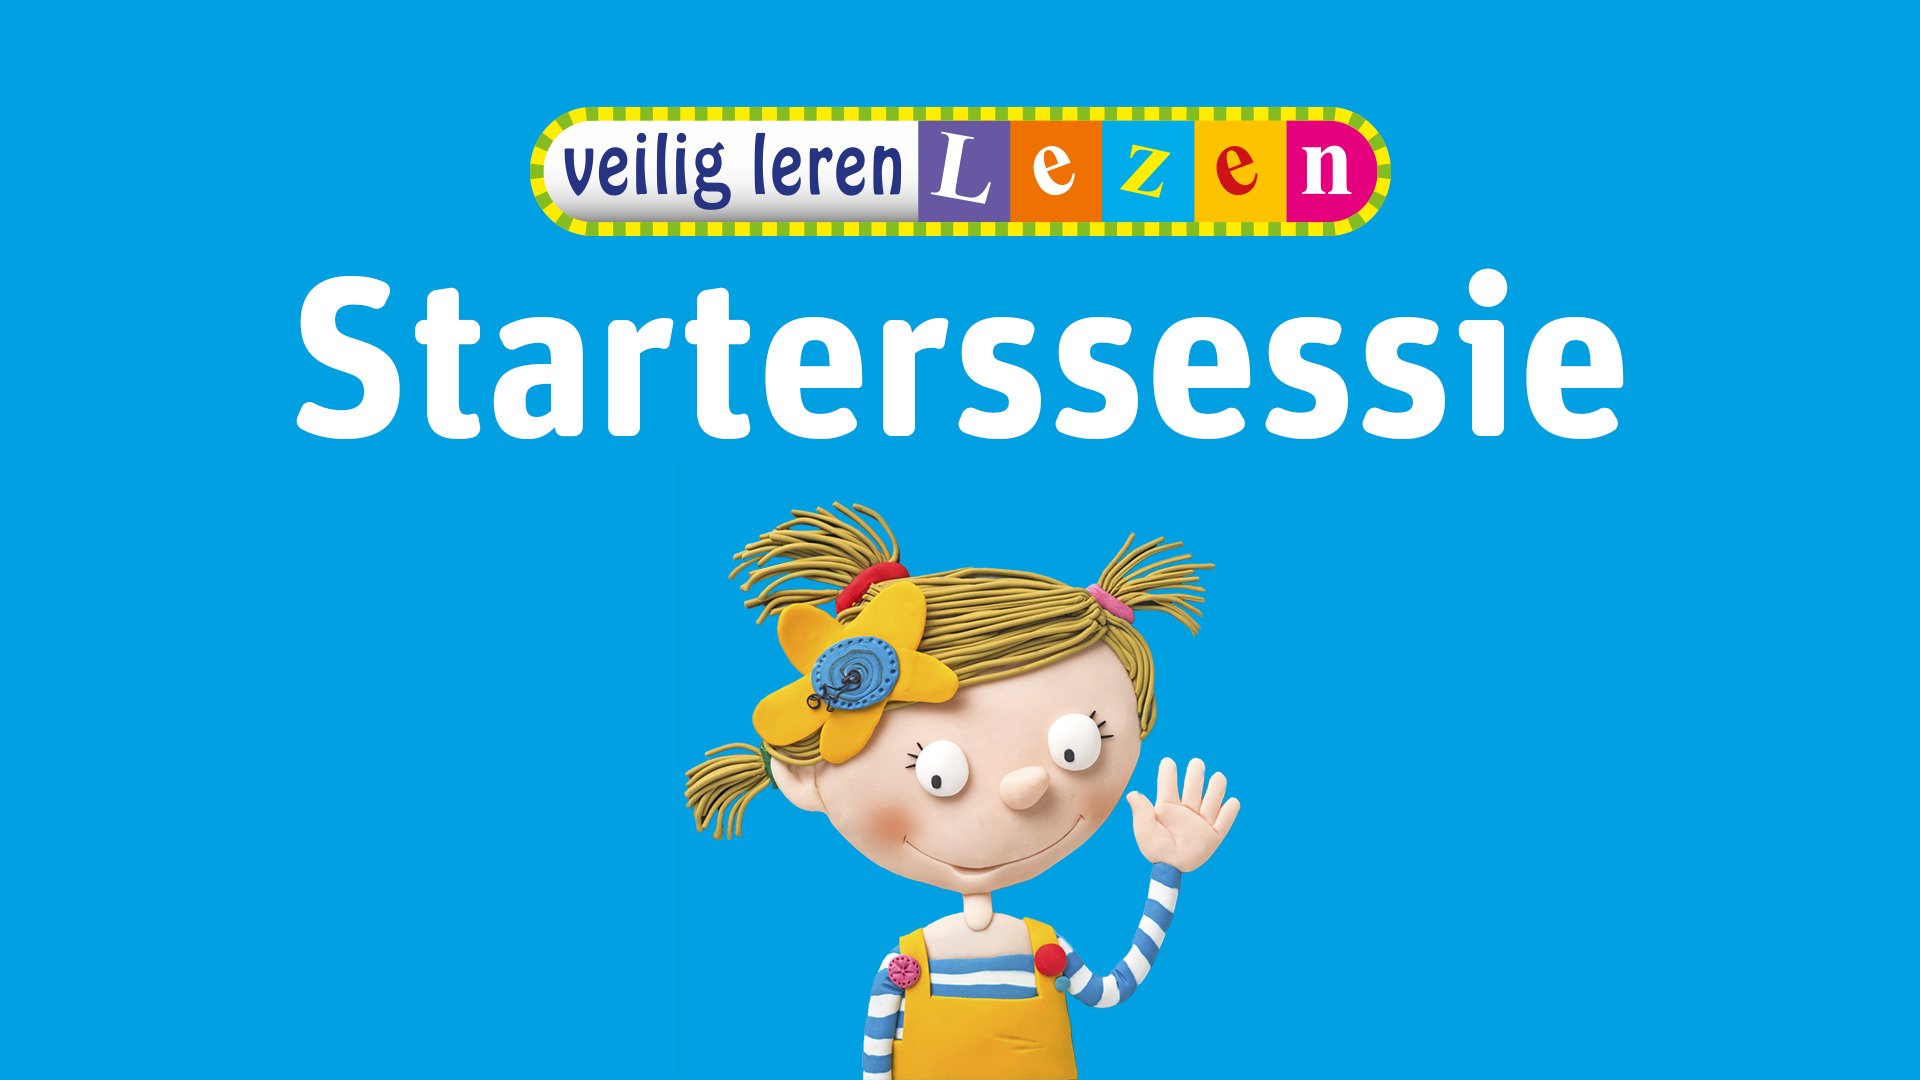 starterssessie-Veilig-leren-lezen2021